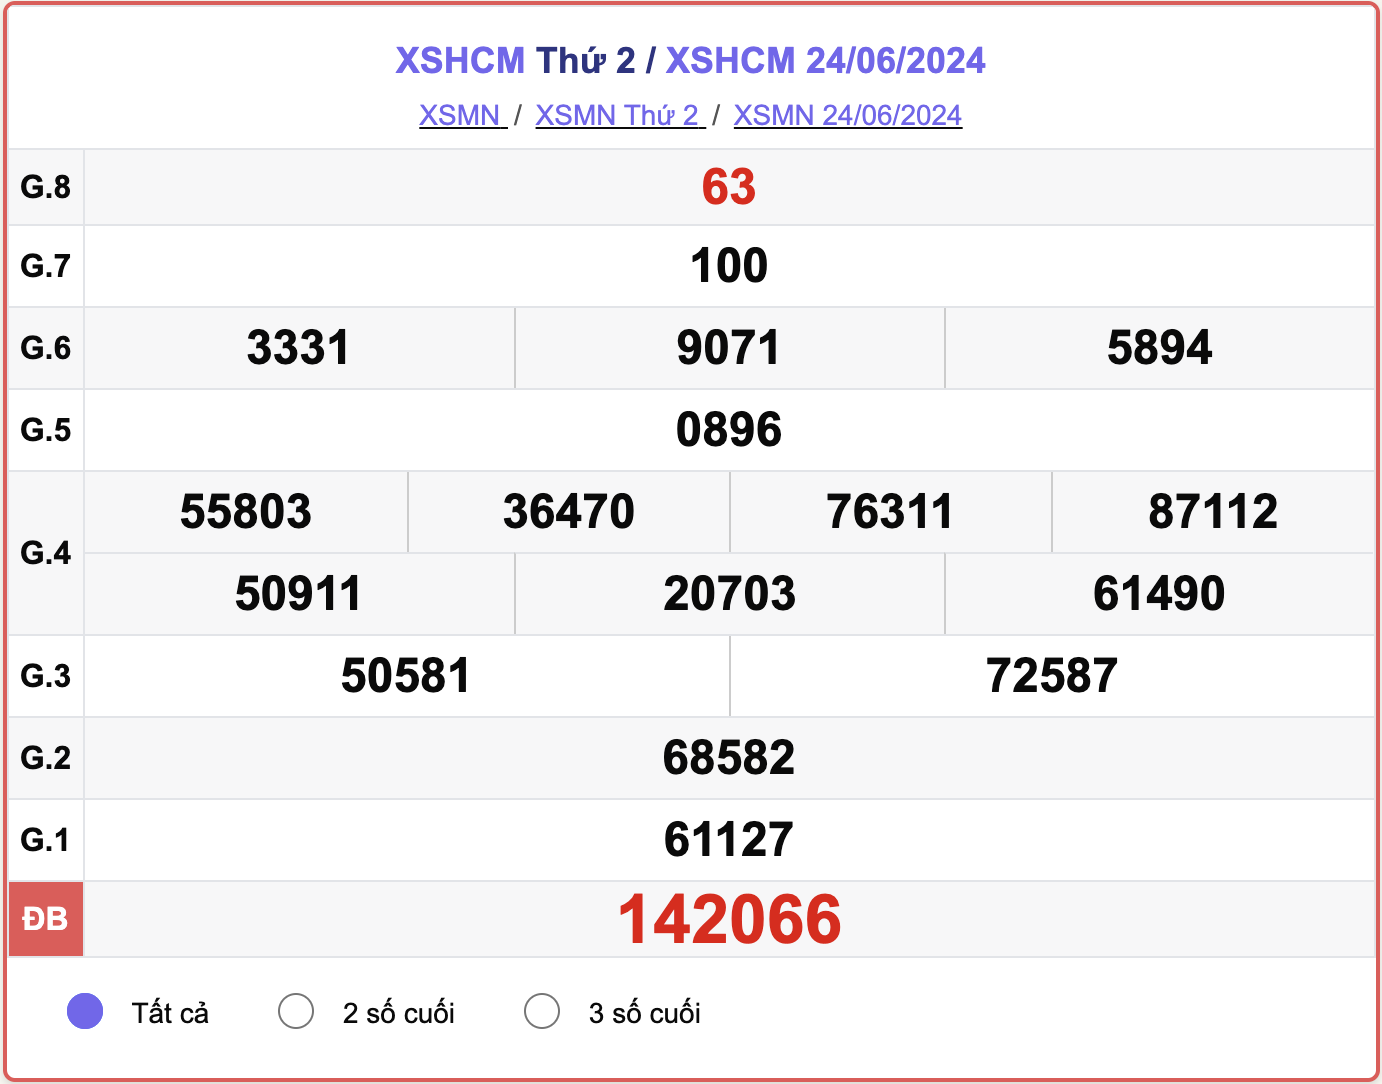 XSHCM 24/6, kết quả xổ số TP.HCM hôm nay 24/6/2024.